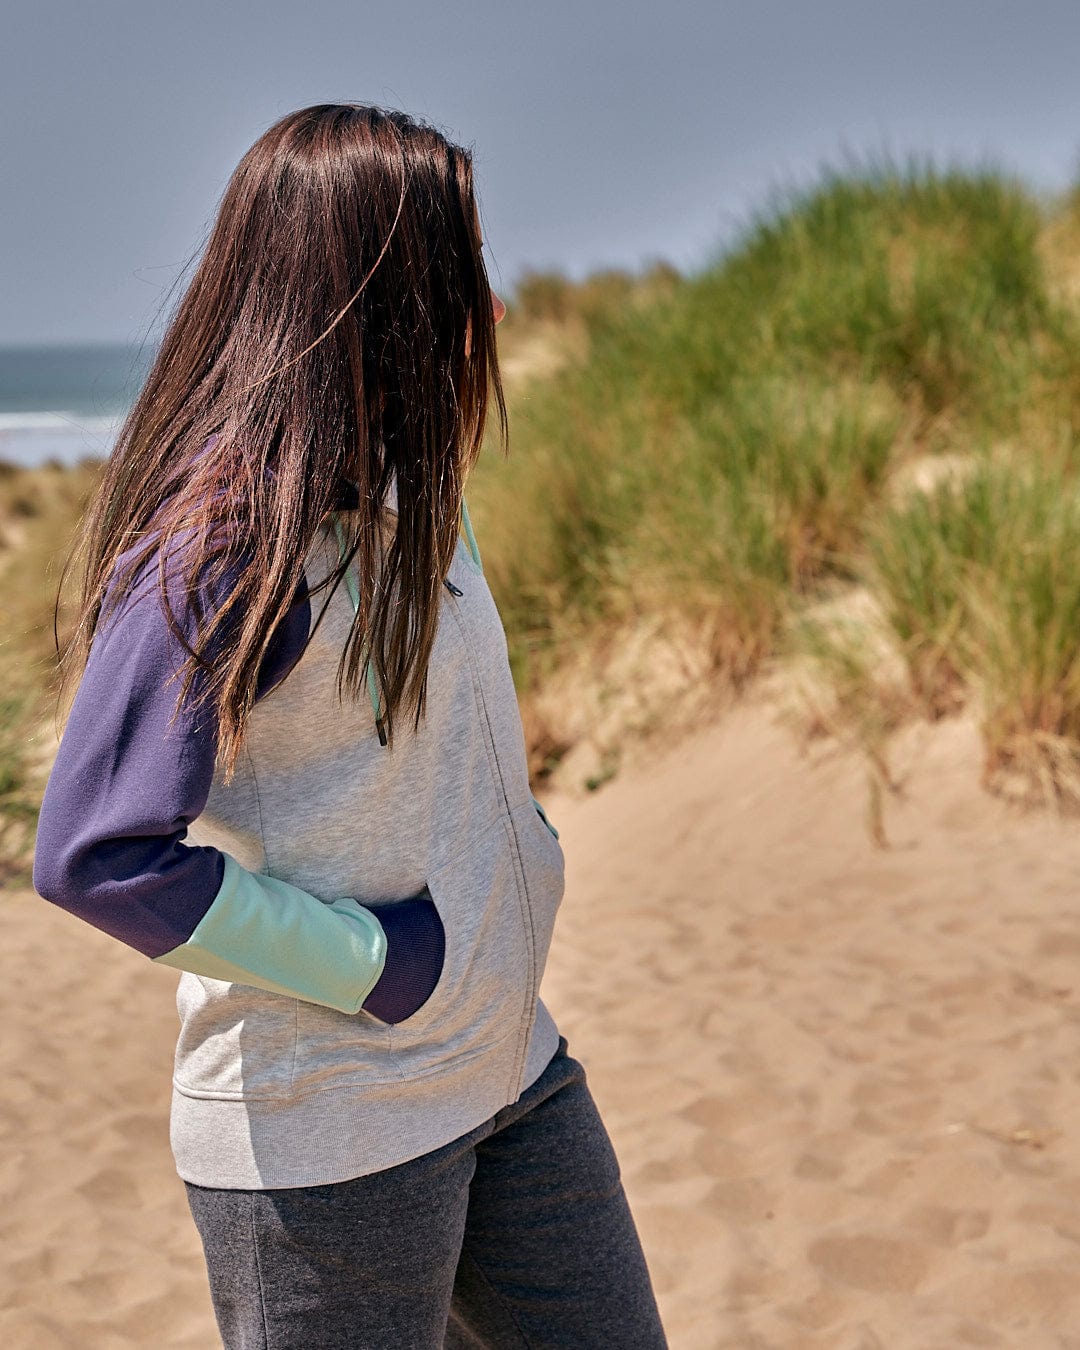 A woman standing on a beach wearing a Saltrock Jan - Womens Zip Hoodie - Light/Grey.